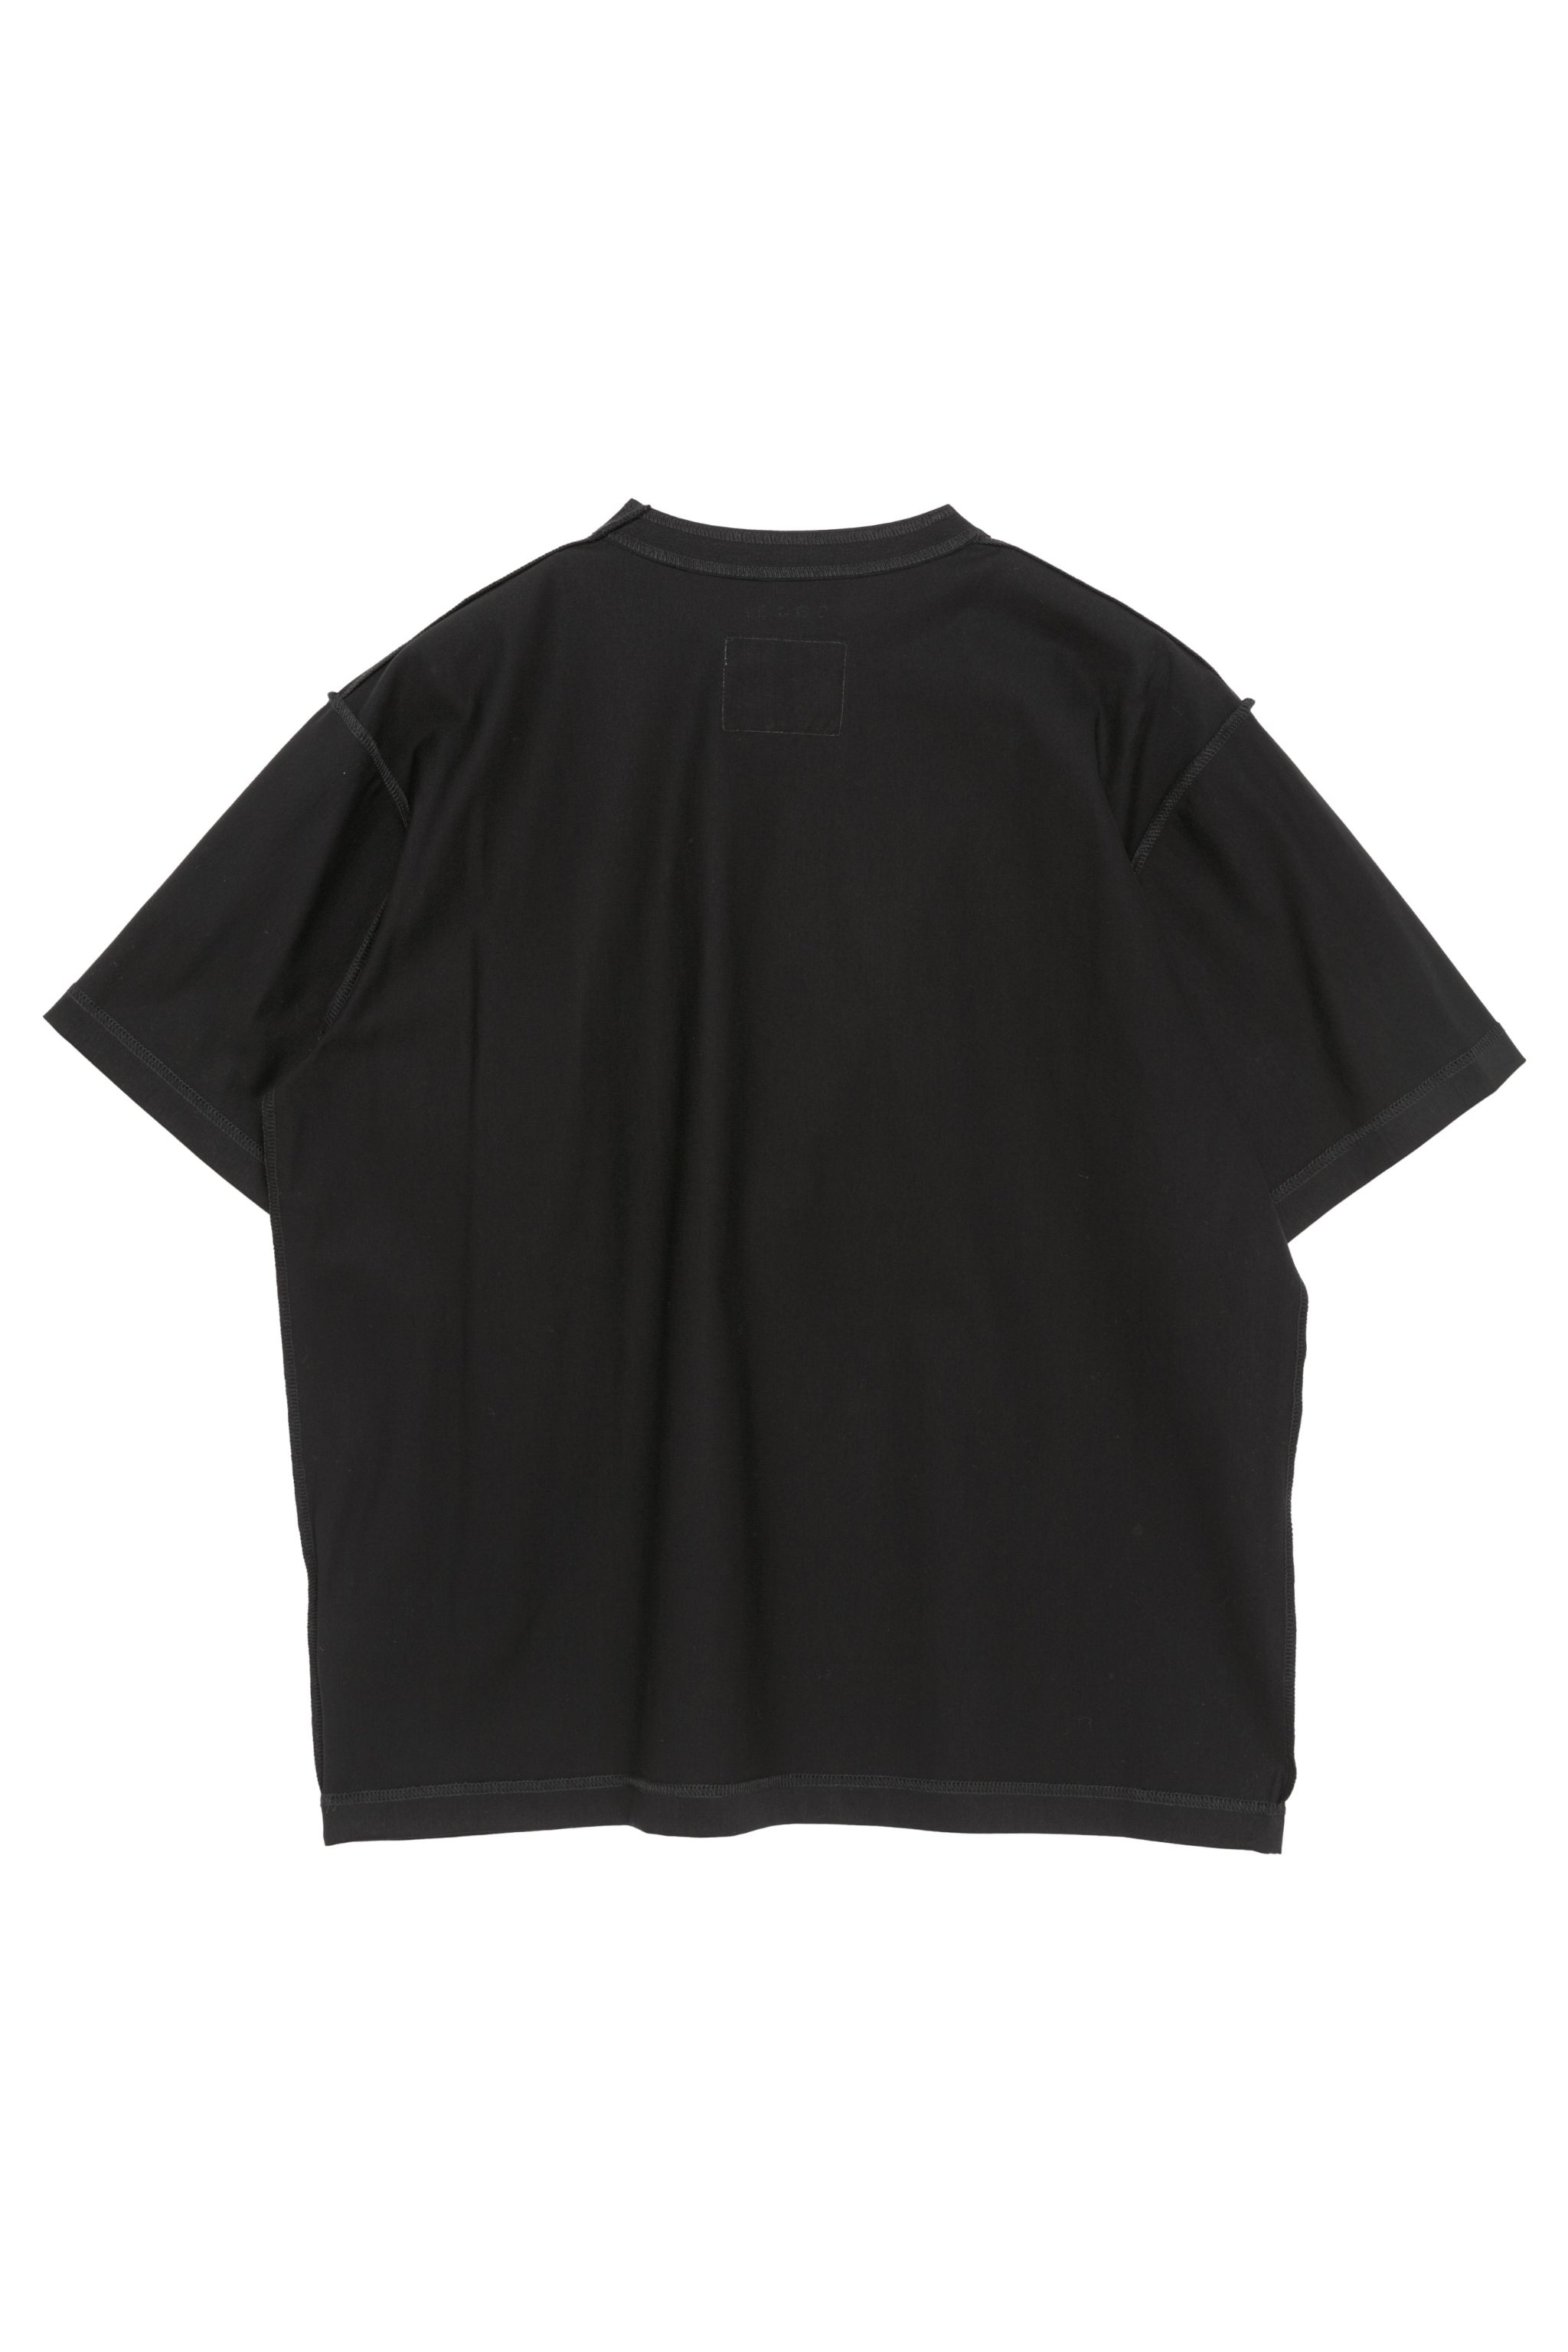 Cotton Jersey T-Shirt - 2